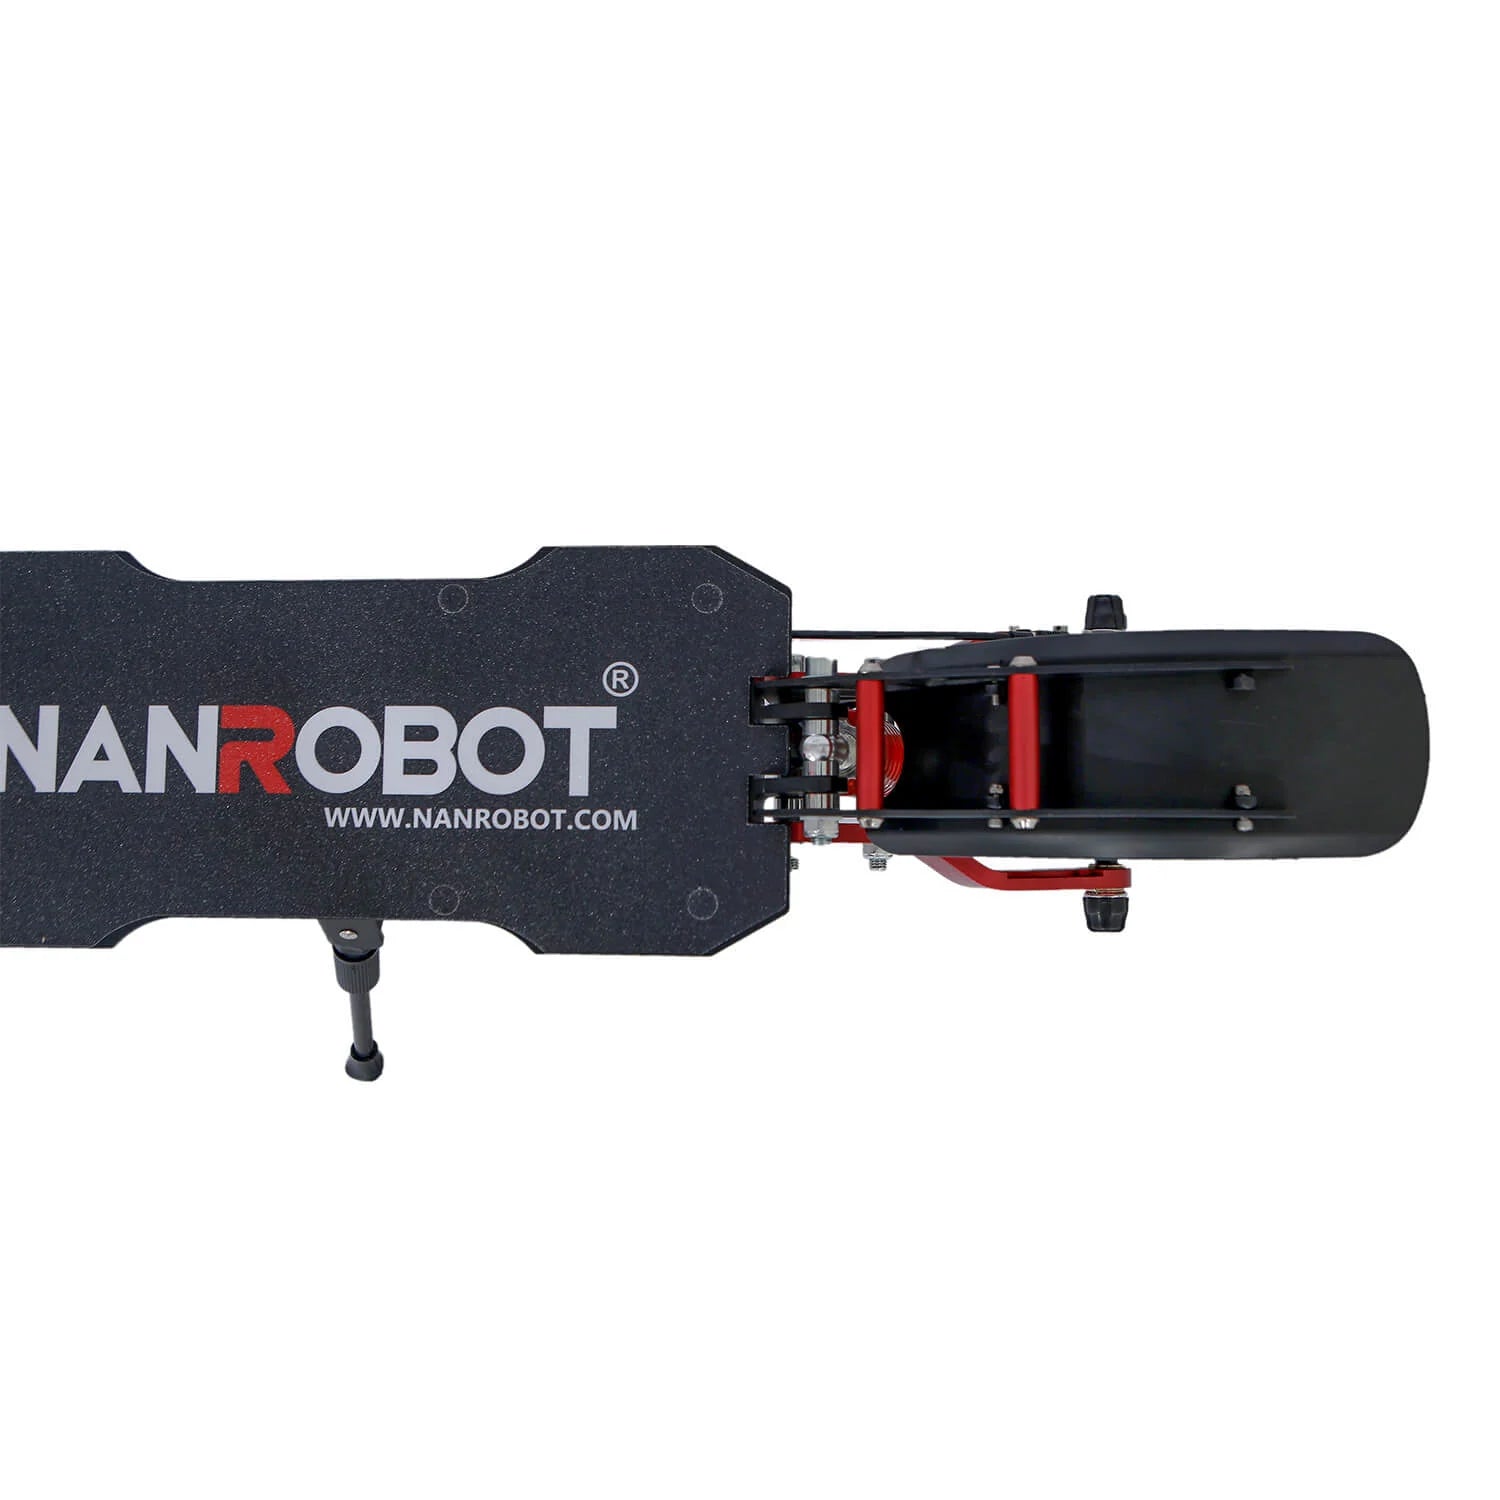 NANROBOT D4+3.0 Scooter eléctrico para adultos con amortiguadores dobles, hasta 40 millas 40 MPH